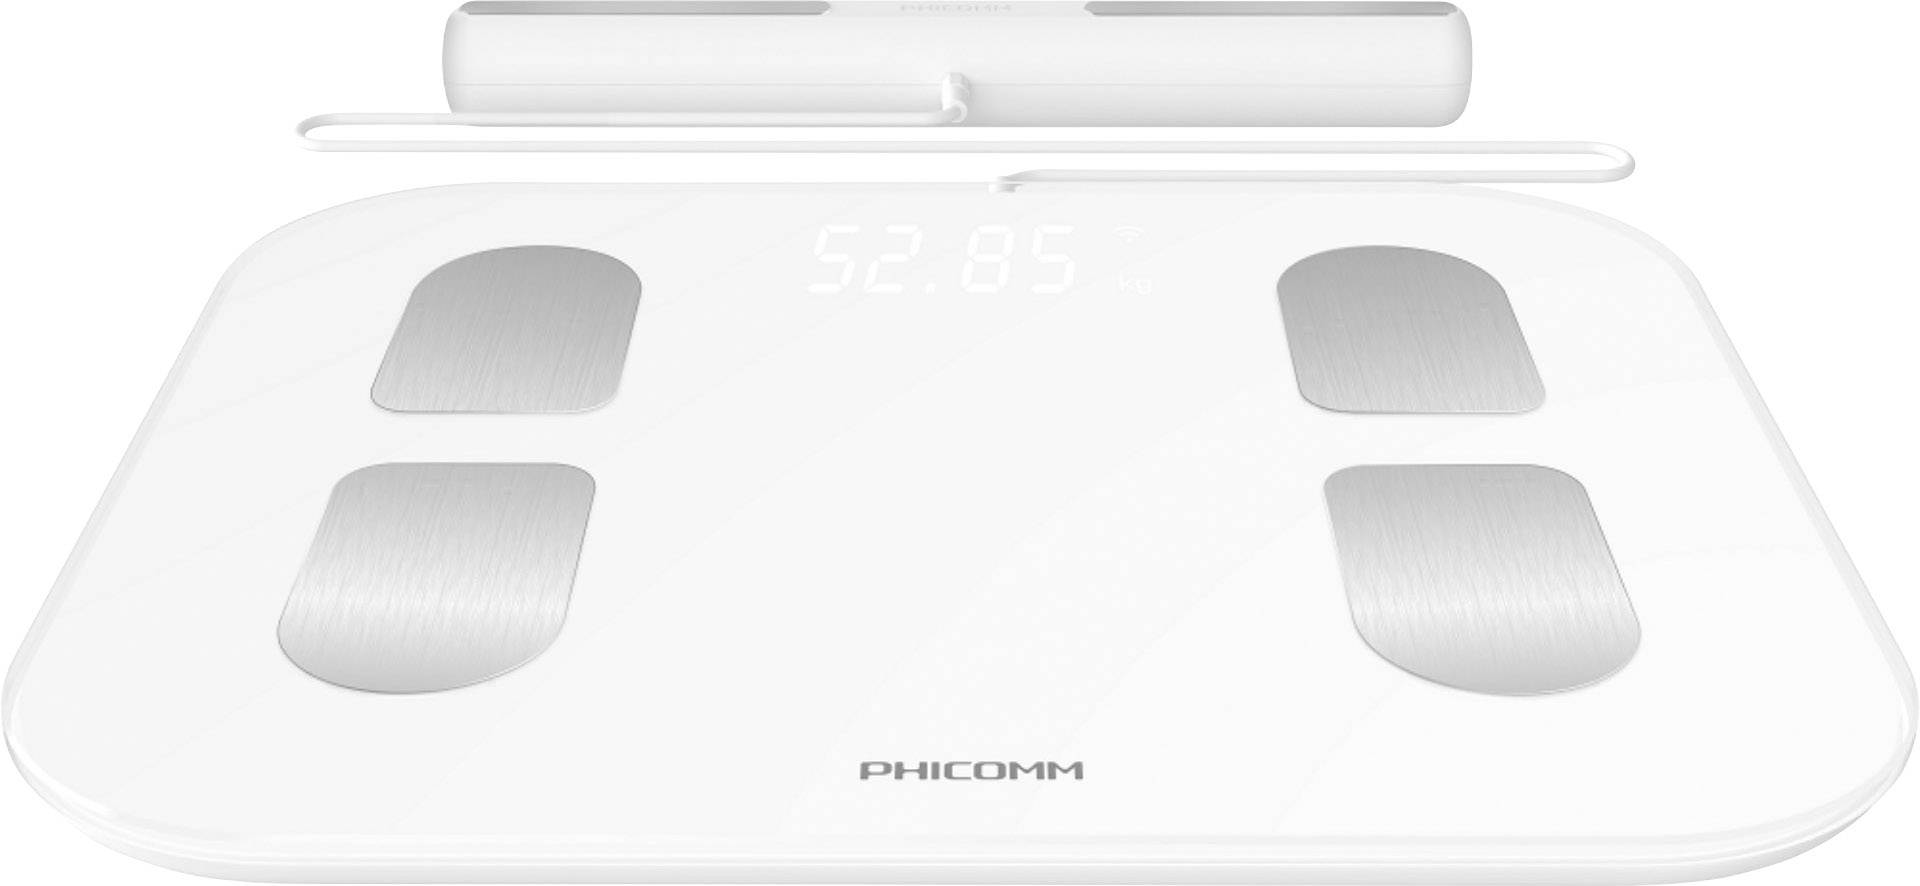 Phicomm s7 Bilancia Pesapersone Digitale con WLAN 2.4 GHz smart Fitness grasso corporeo bilancia 